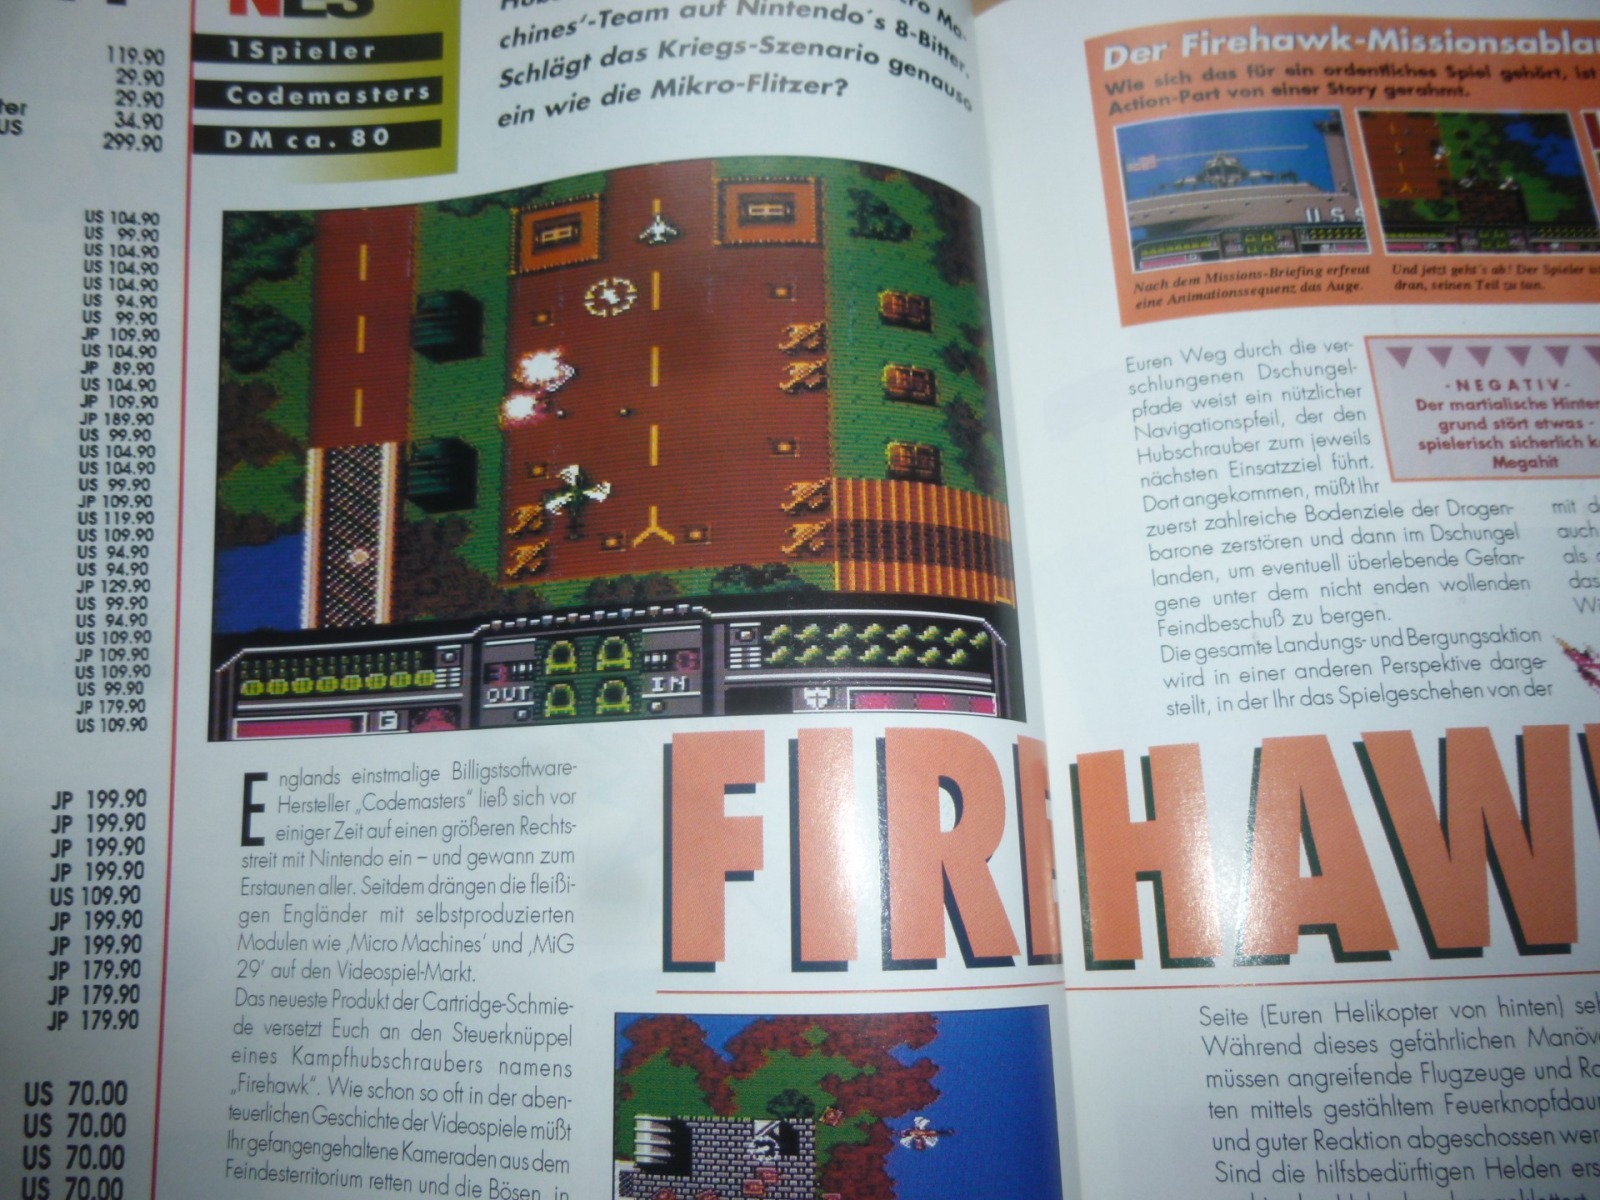 TOTAL Das unabhängige Magazin - 100 Nintendo - Ausgabe 9/93 1993 19